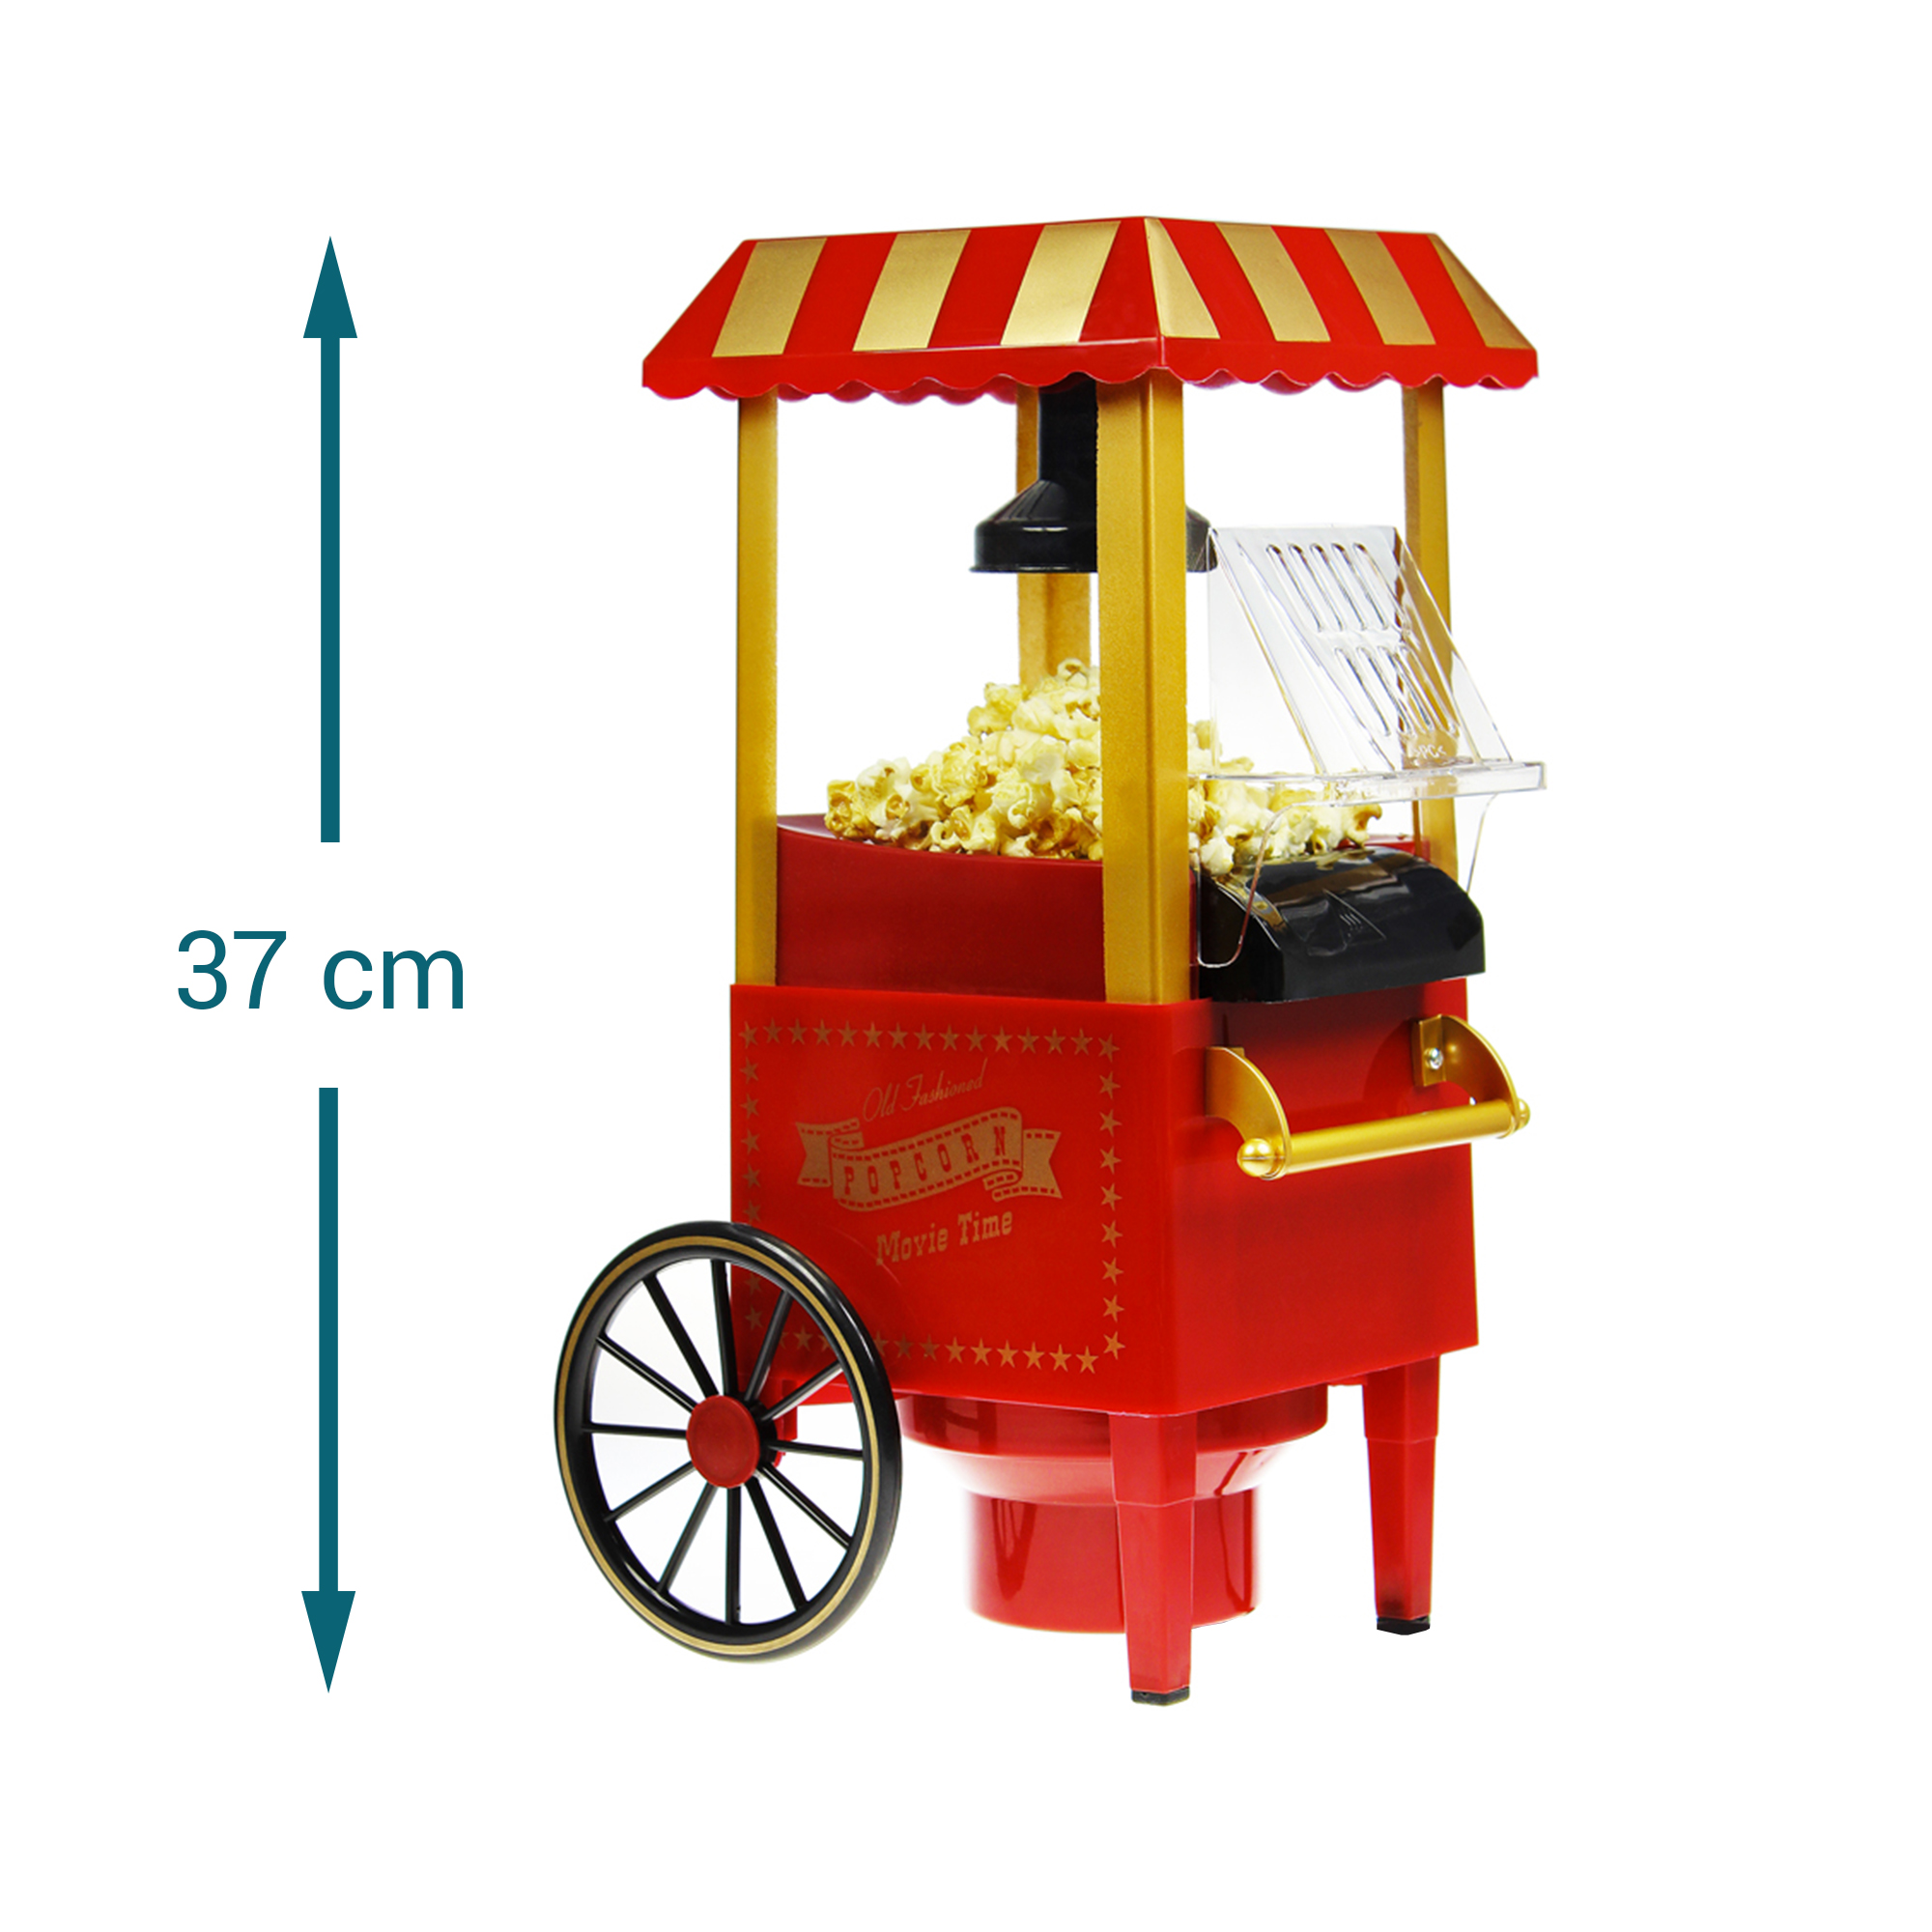 Retro Popcornmaschine mit Wagen 2246 - 9